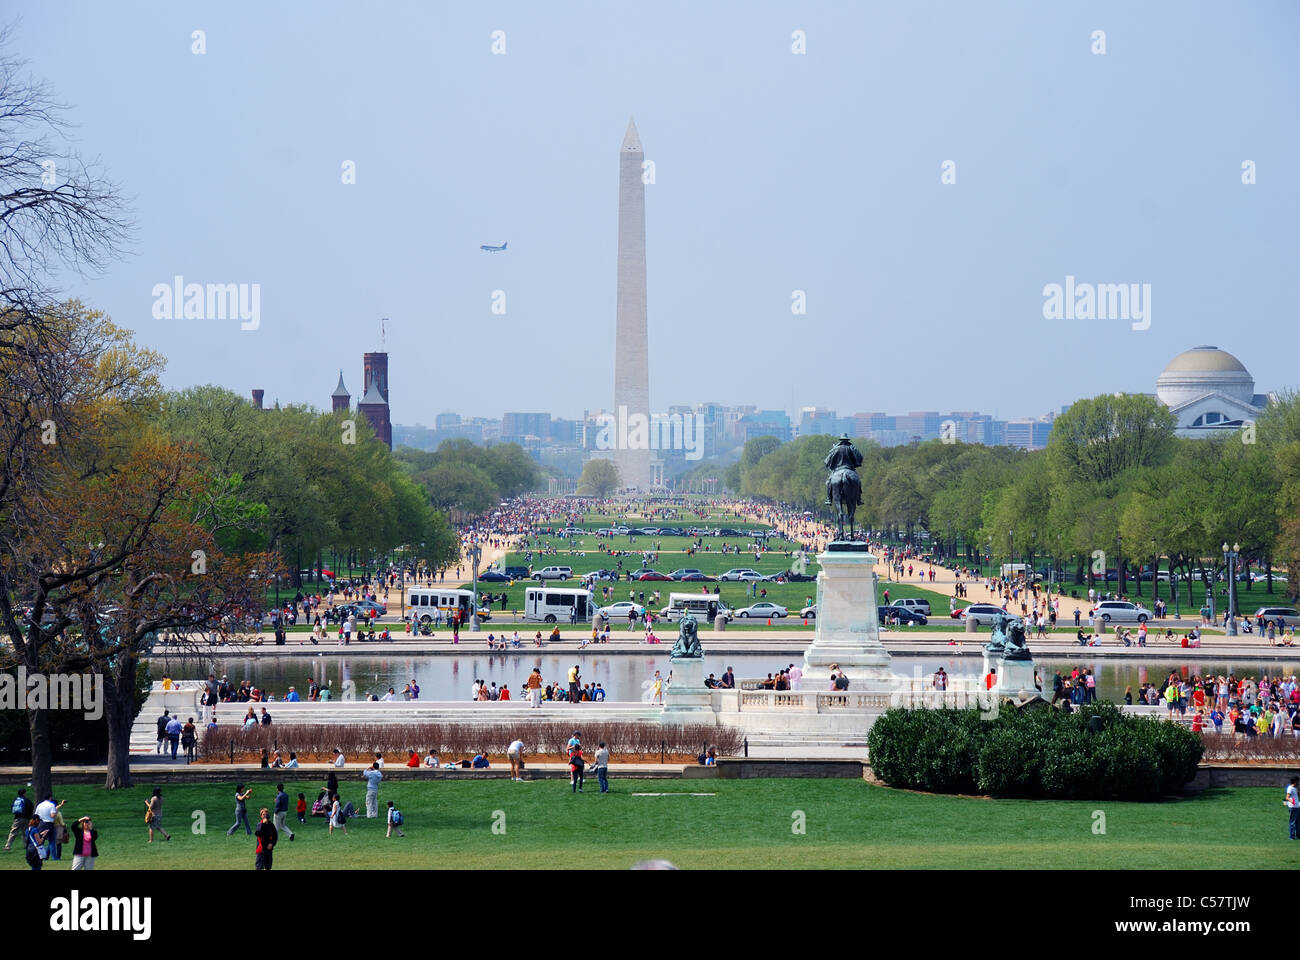 Washington DC national mall with Washington monument Stock Photo